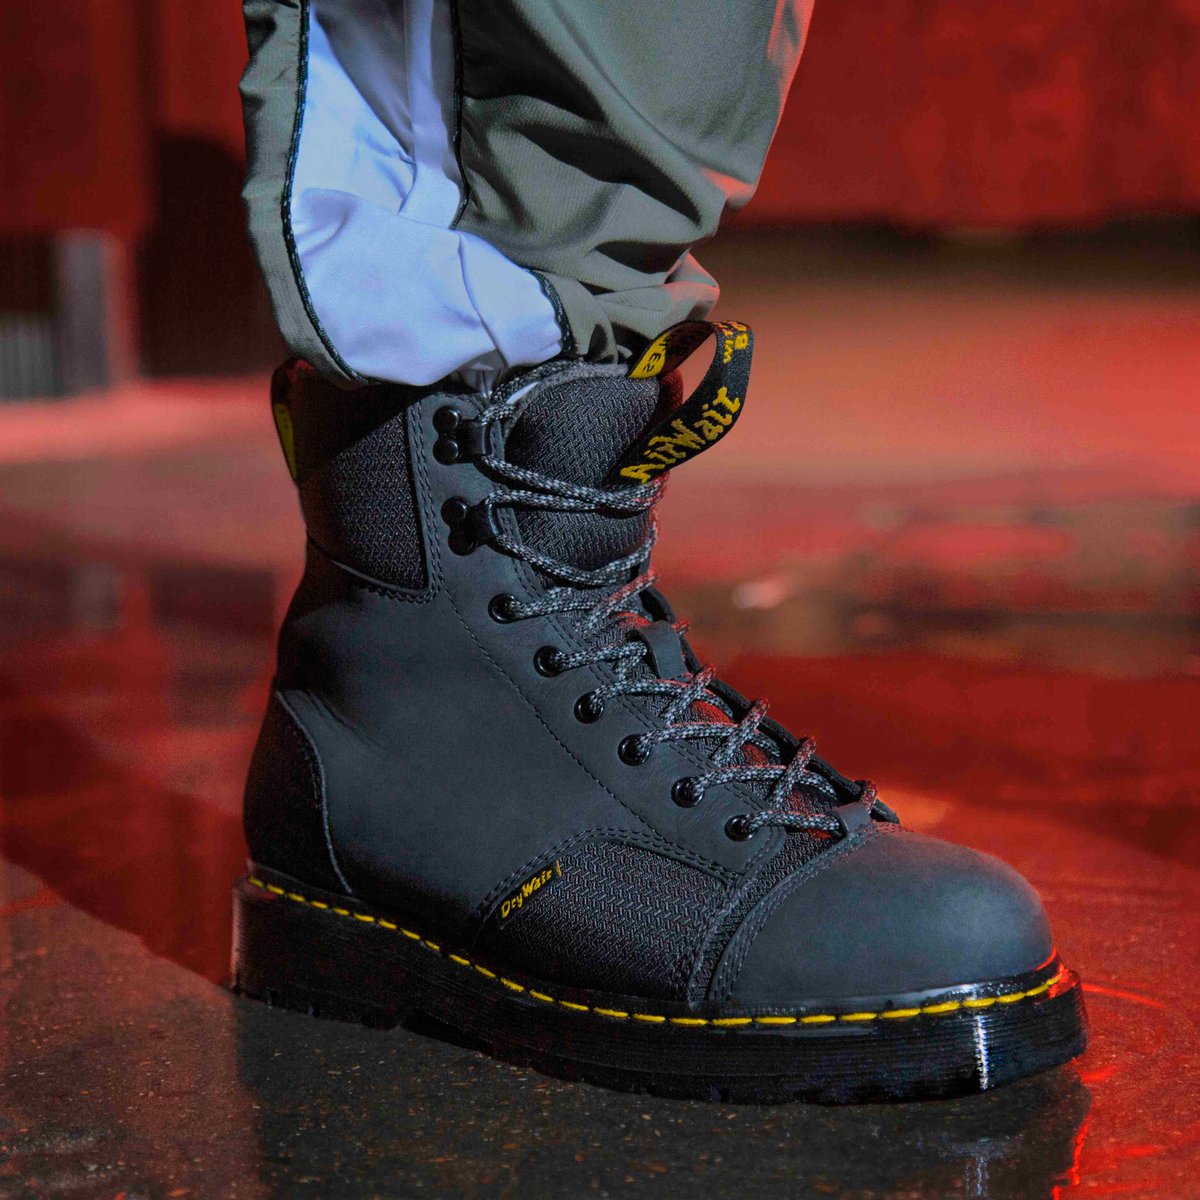 ドクターマーチンから冬の新作ブーツが登場、防水性と高い履き心地を両立